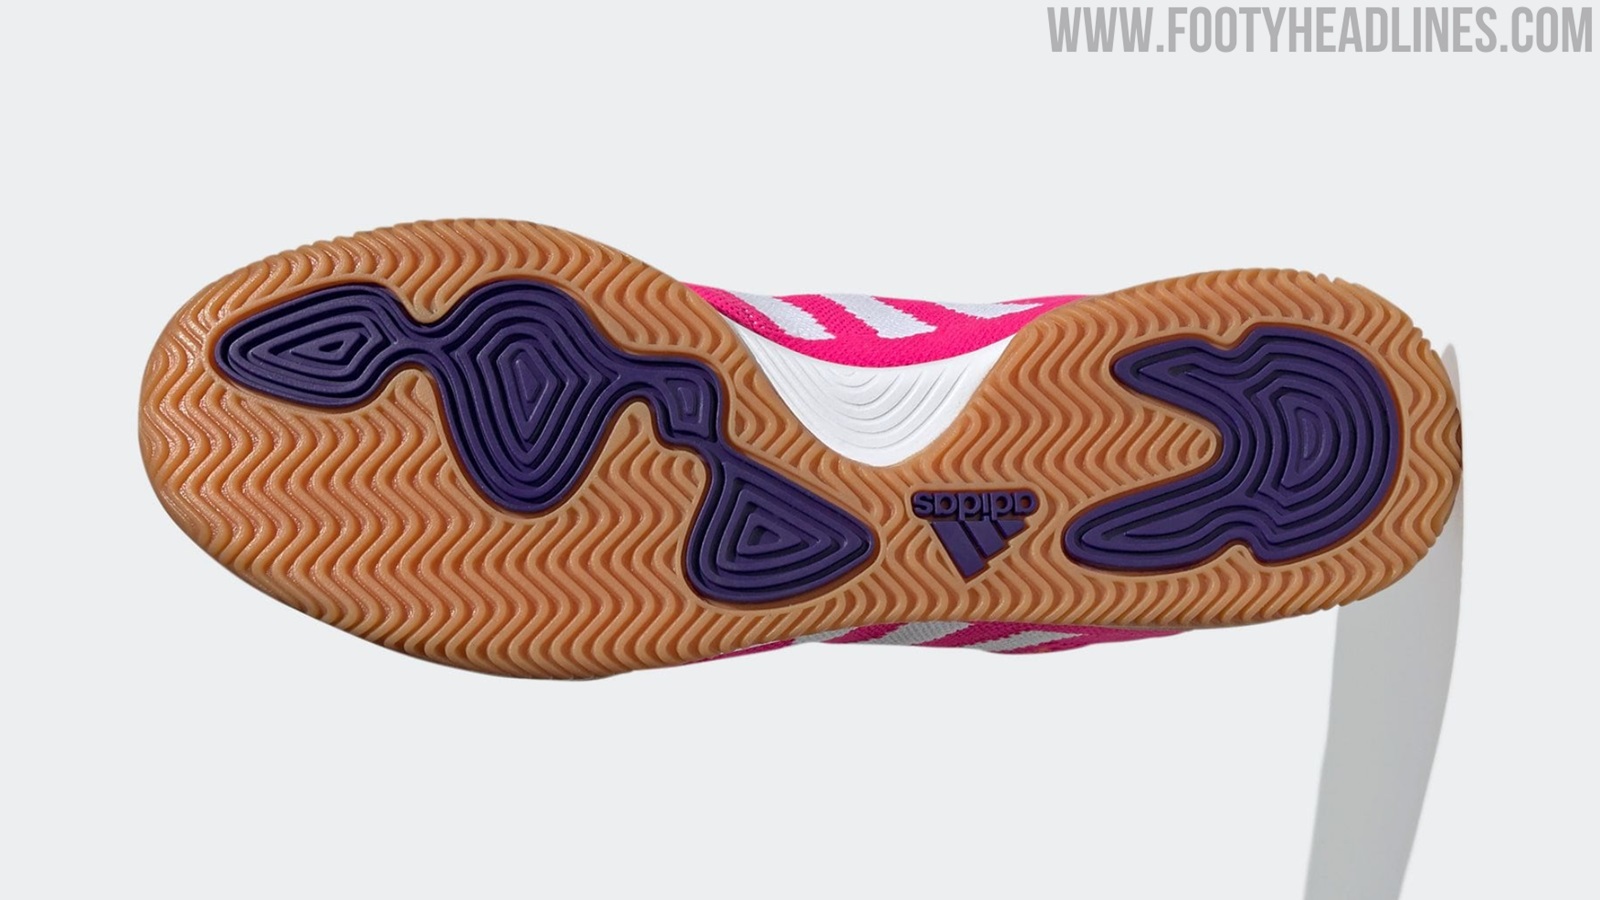 Giày đá bóng Adidas Copa Mundial Primeknit TR